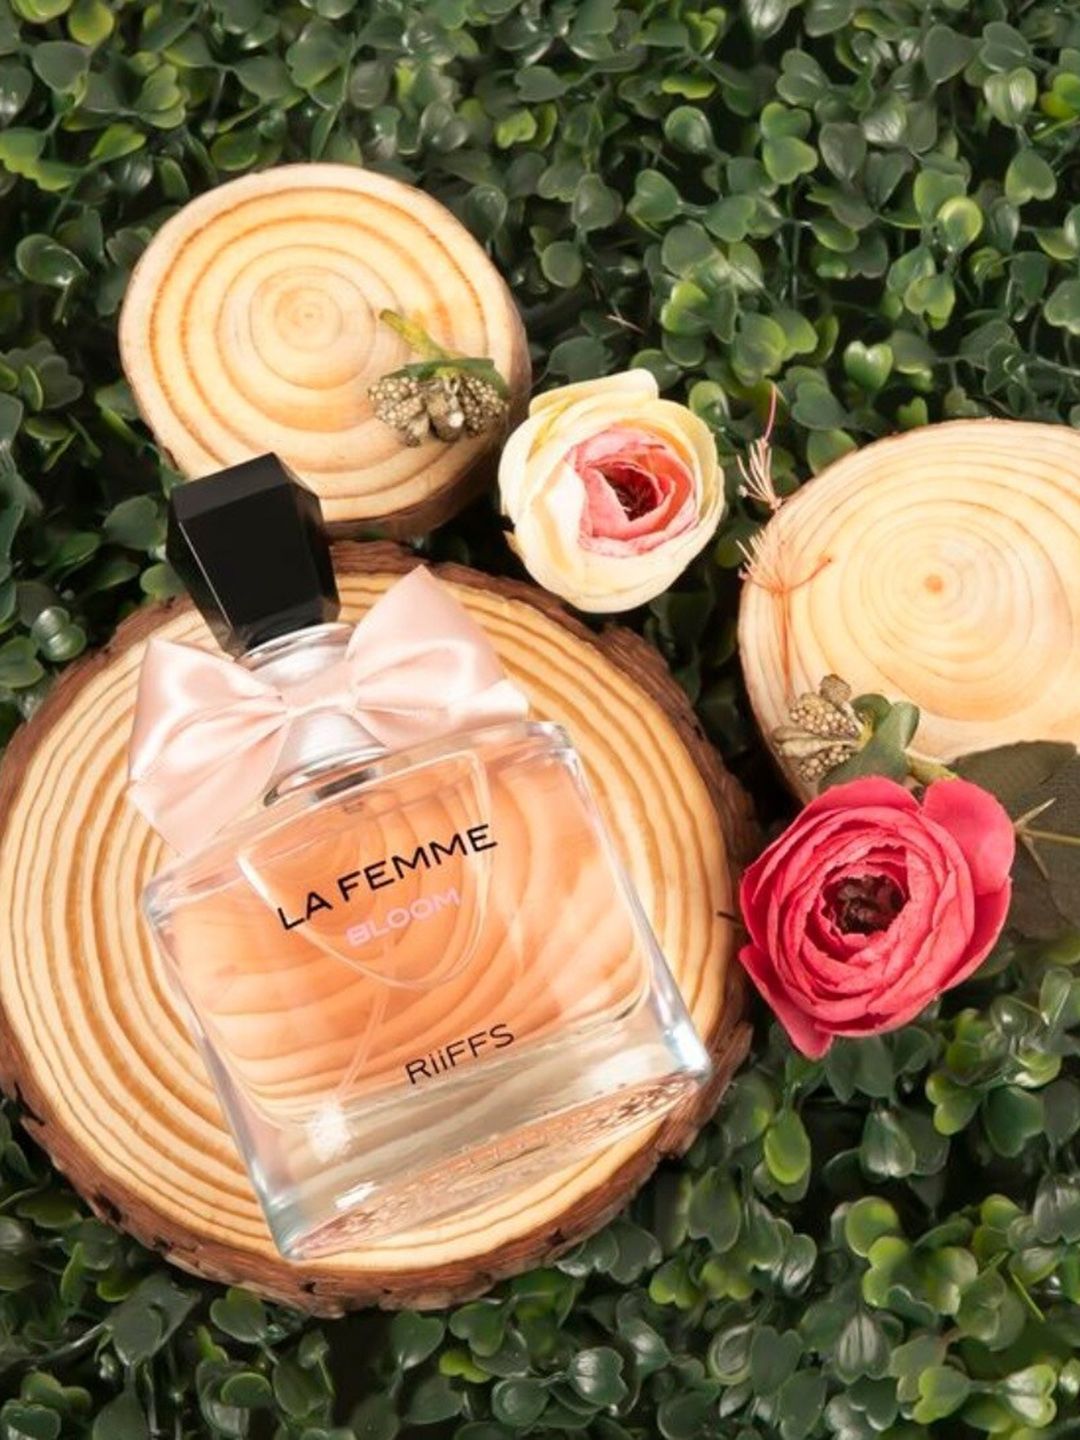 RIIFFS La Femme Bloom Eau De Perfume 100 ml Price in India